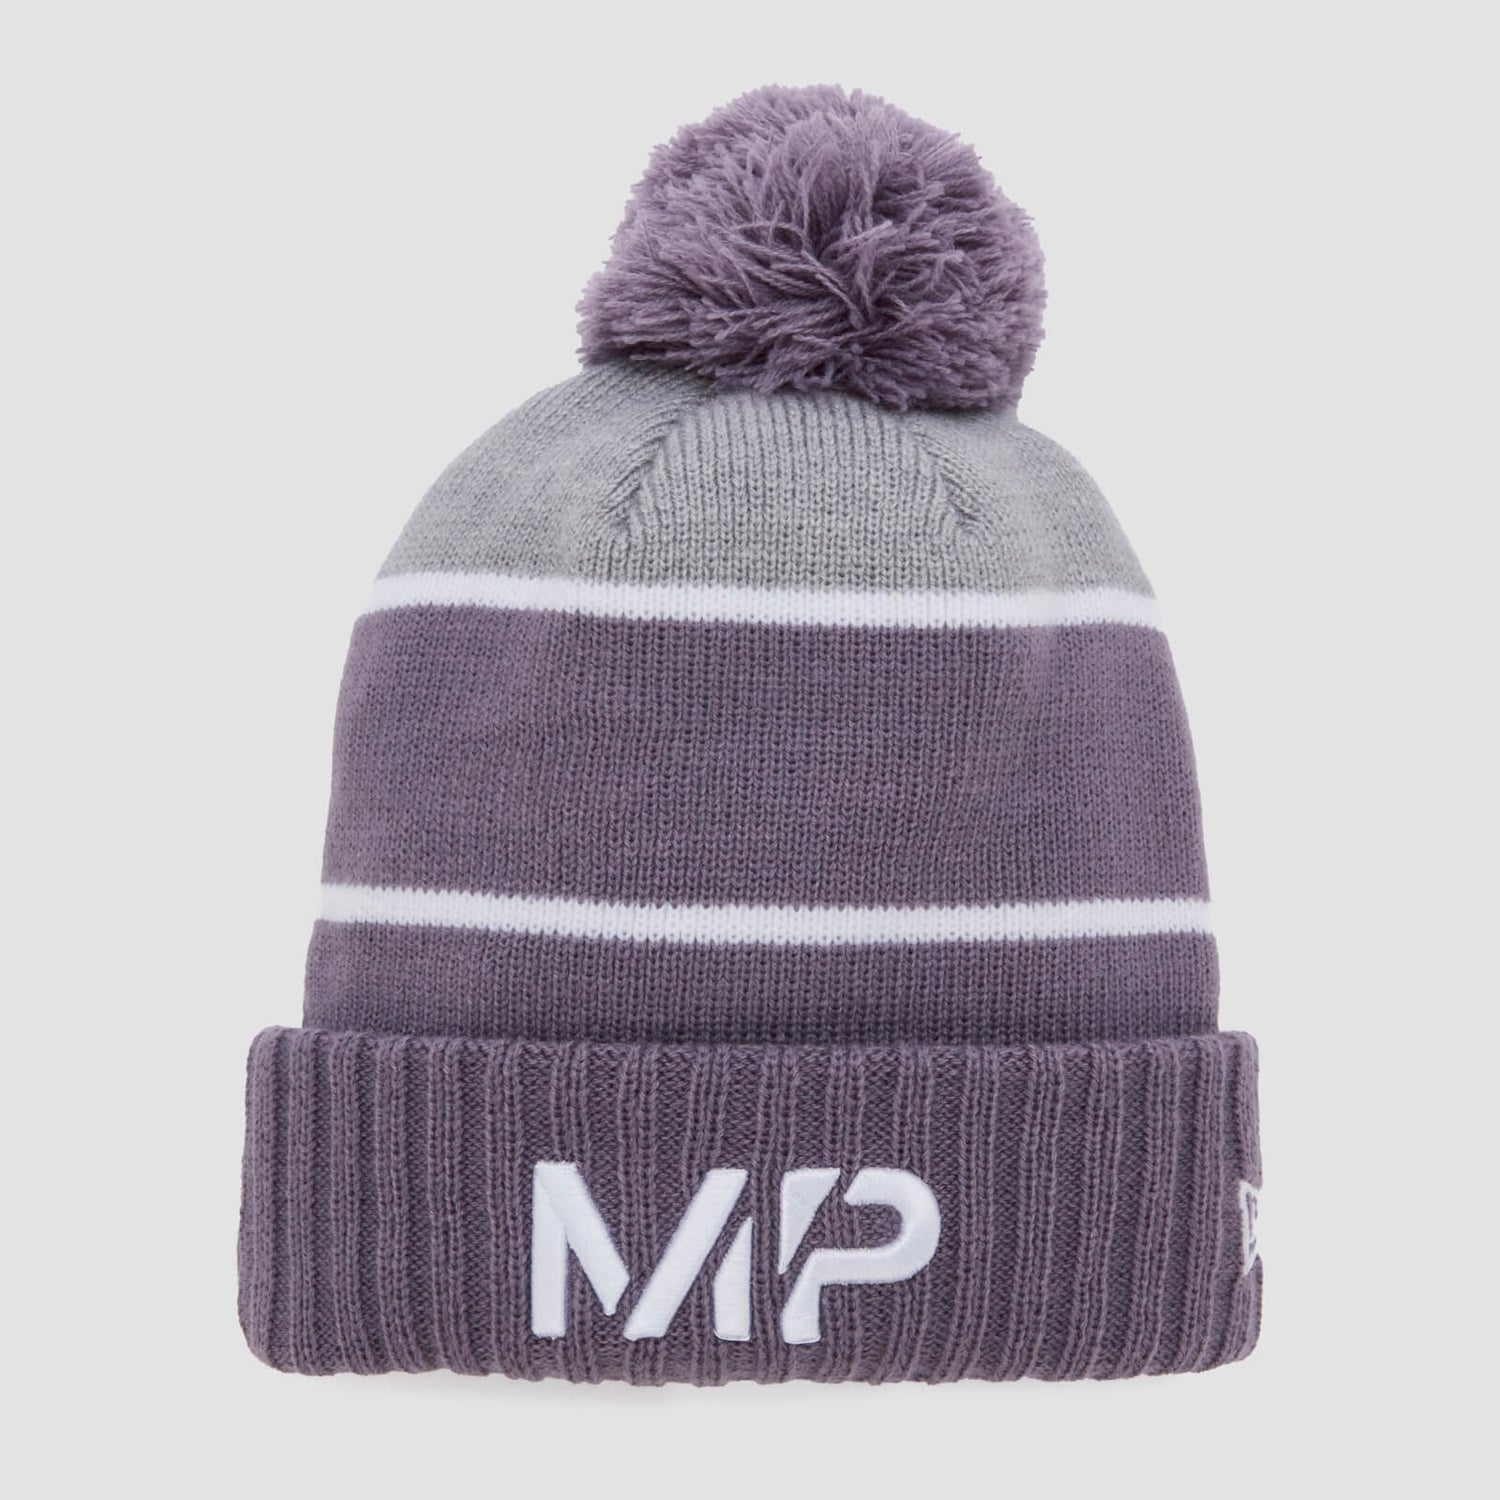 MP New Era kötött bóbitás sapka - Smokey Purple/Storm Grey